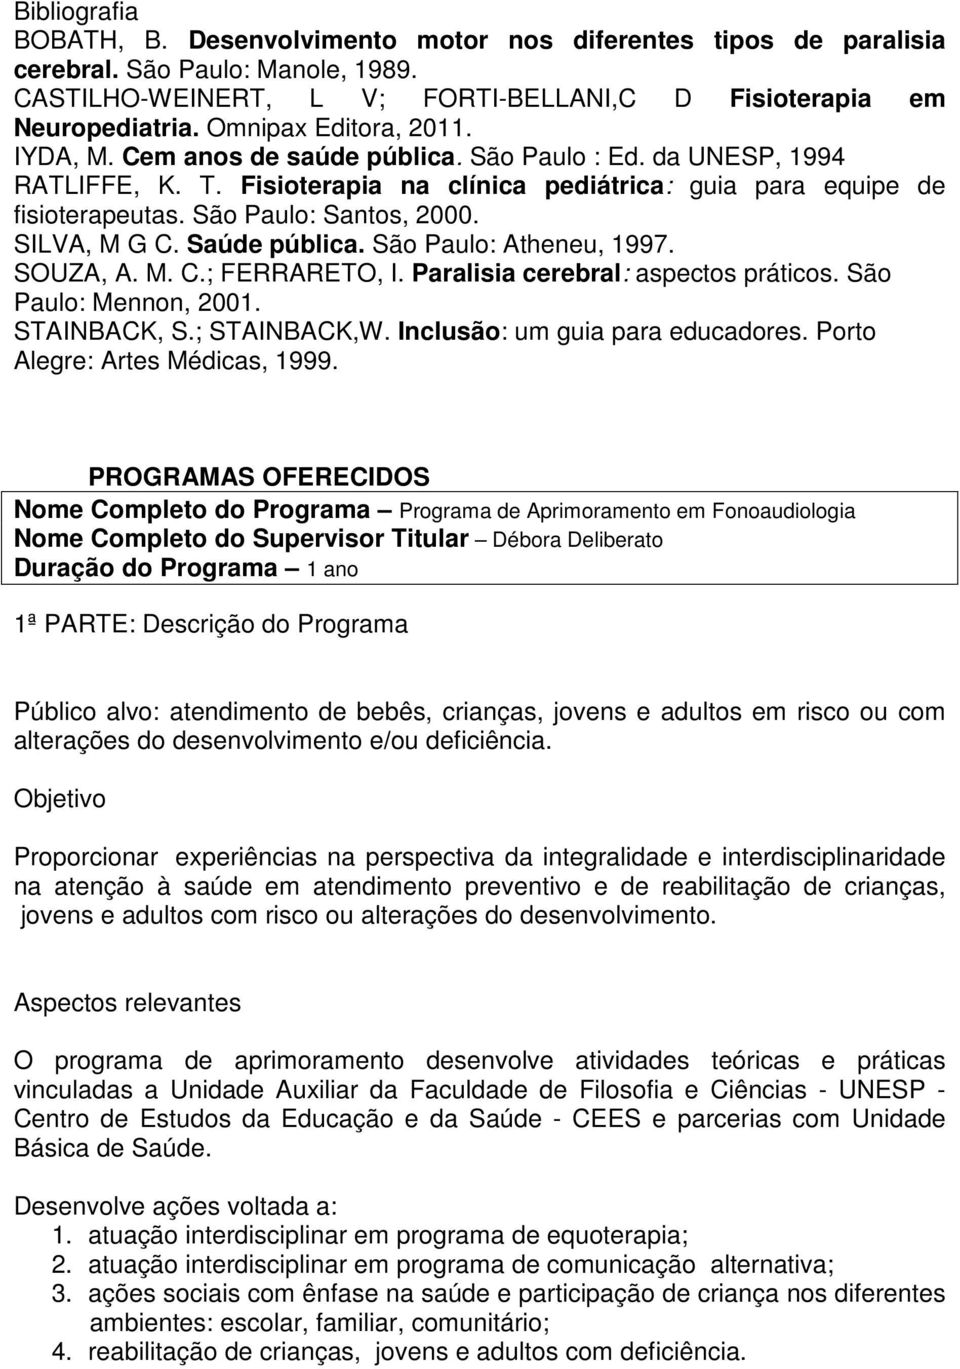 São Paulo: Santos, 2000. SILVA, M G C. Saúde pública. São Paulo: Atheneu, 1997. SOUZA, A. M. C.; FERRARETO, I. Paralisia cerebral: aspectos práticos. São Paulo: Mennon, 2001. STAINBACK, S.